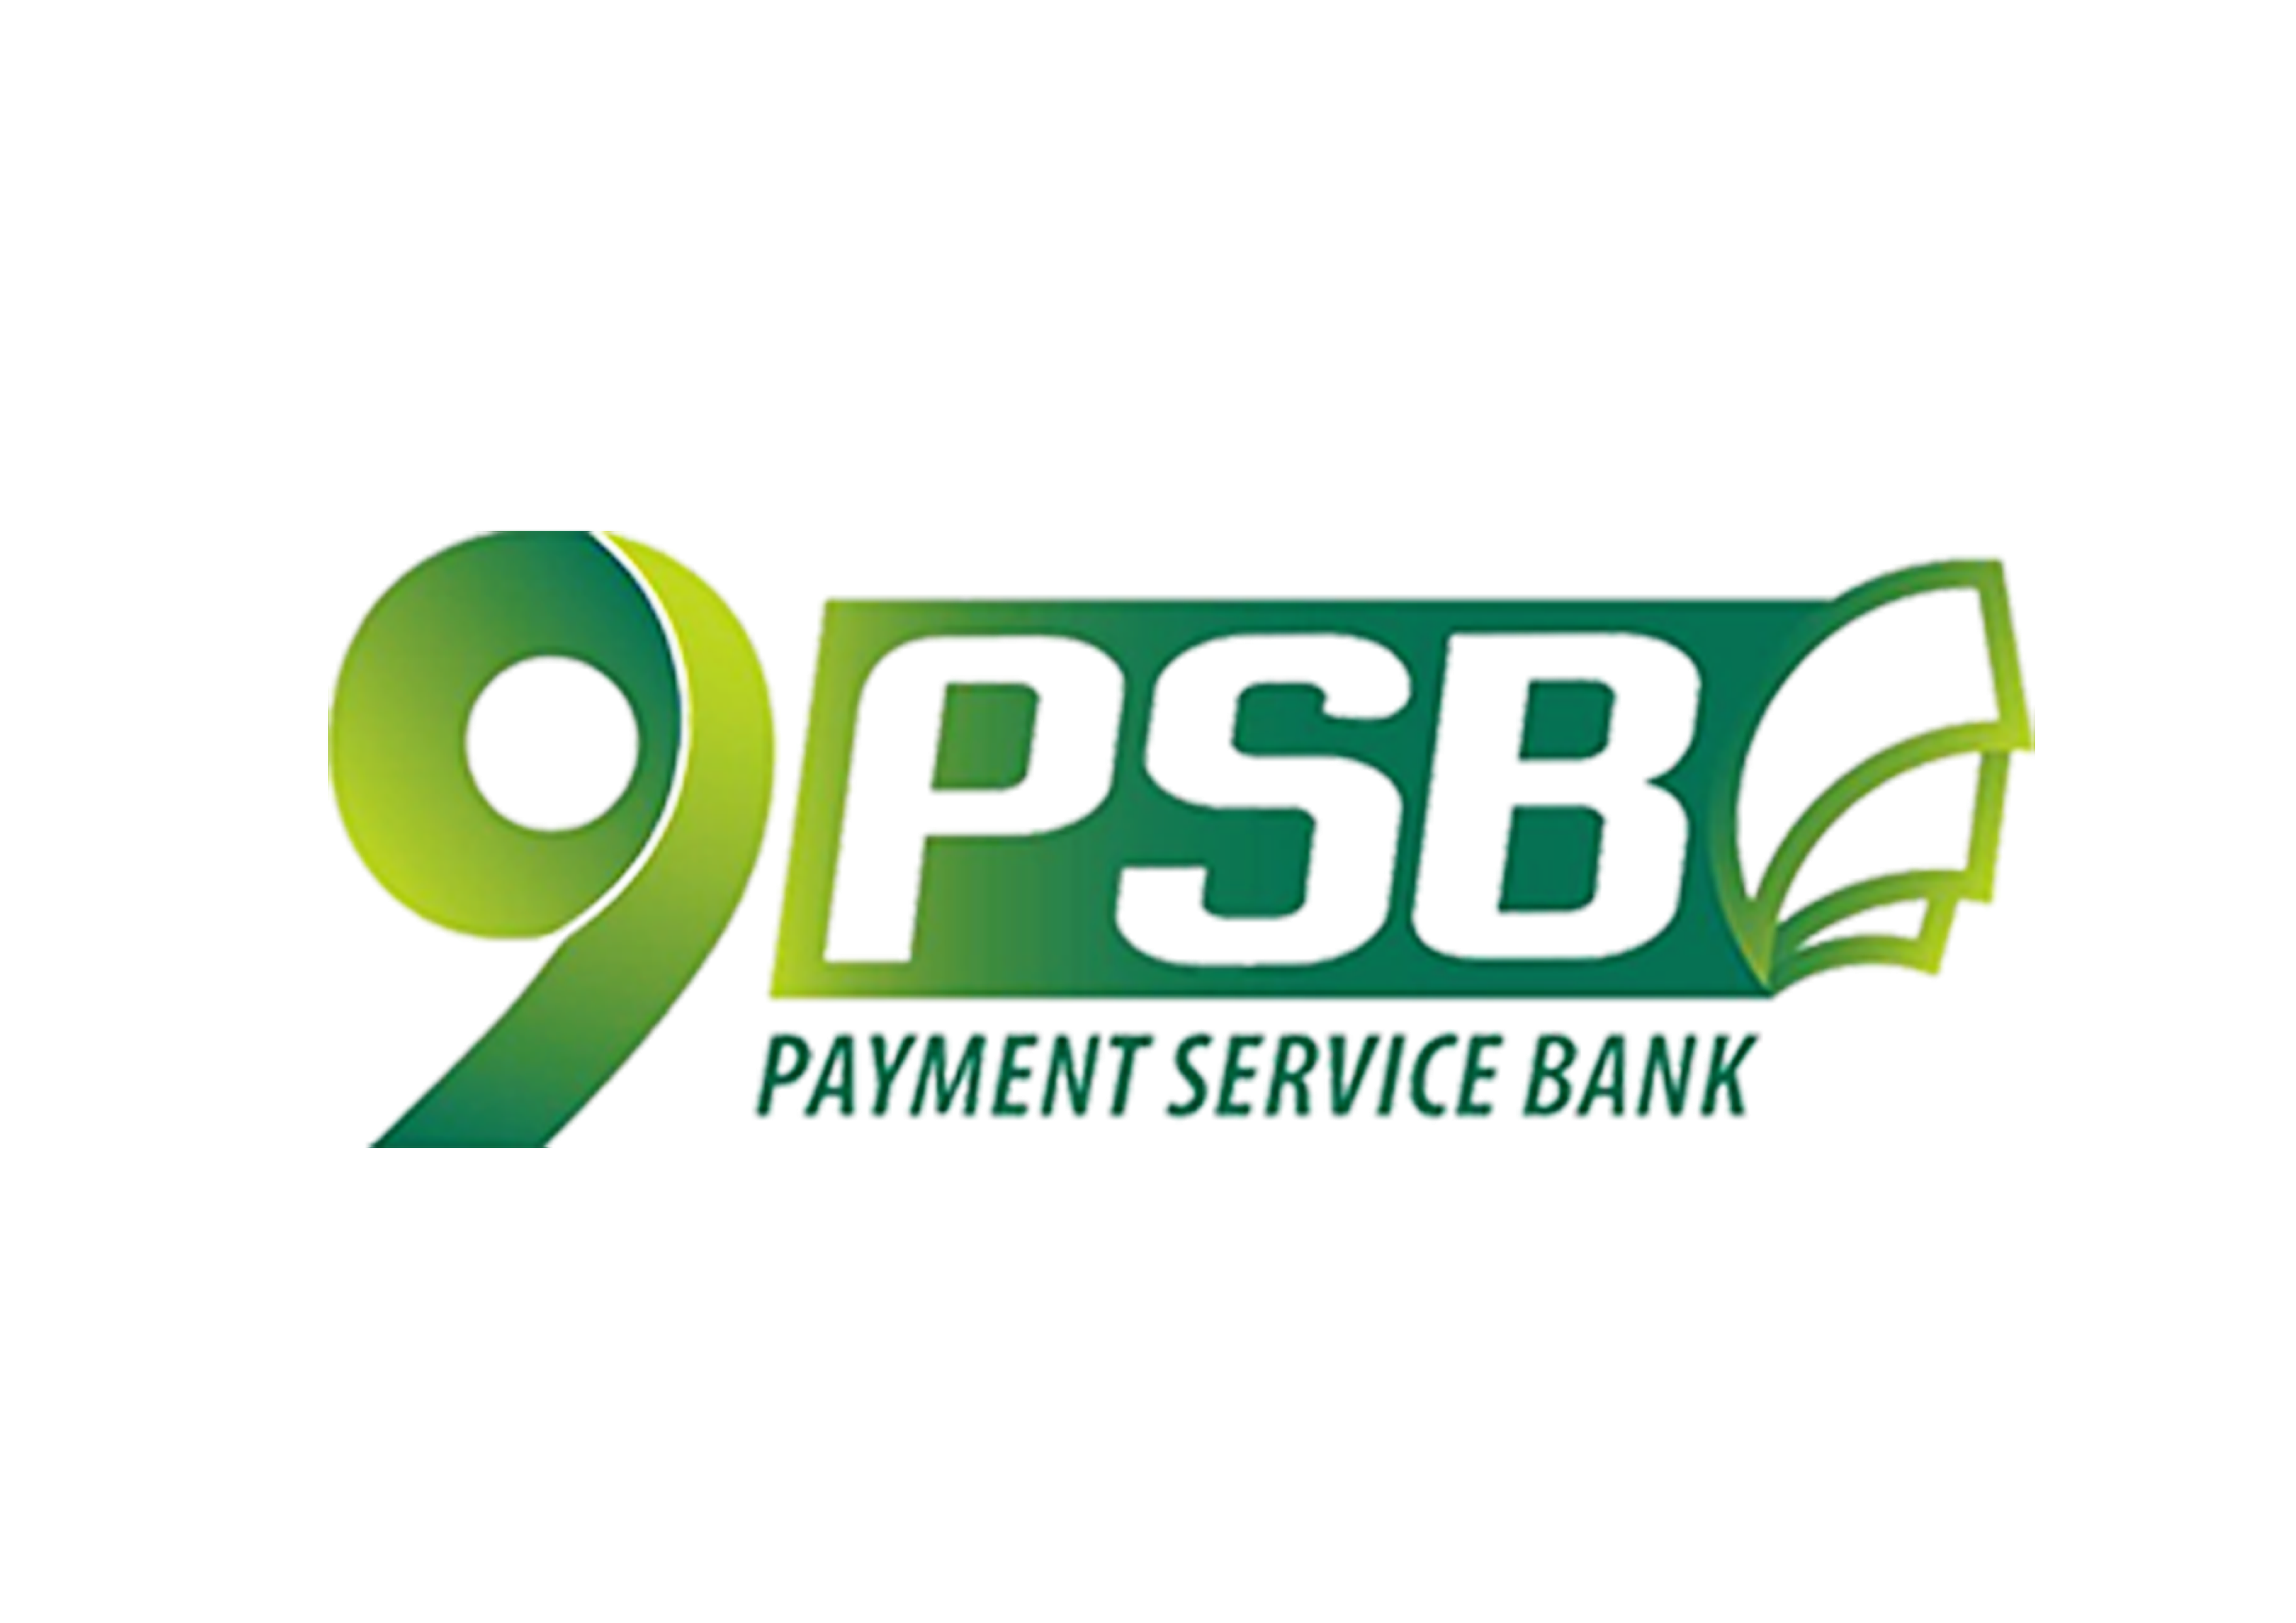 P2B Services